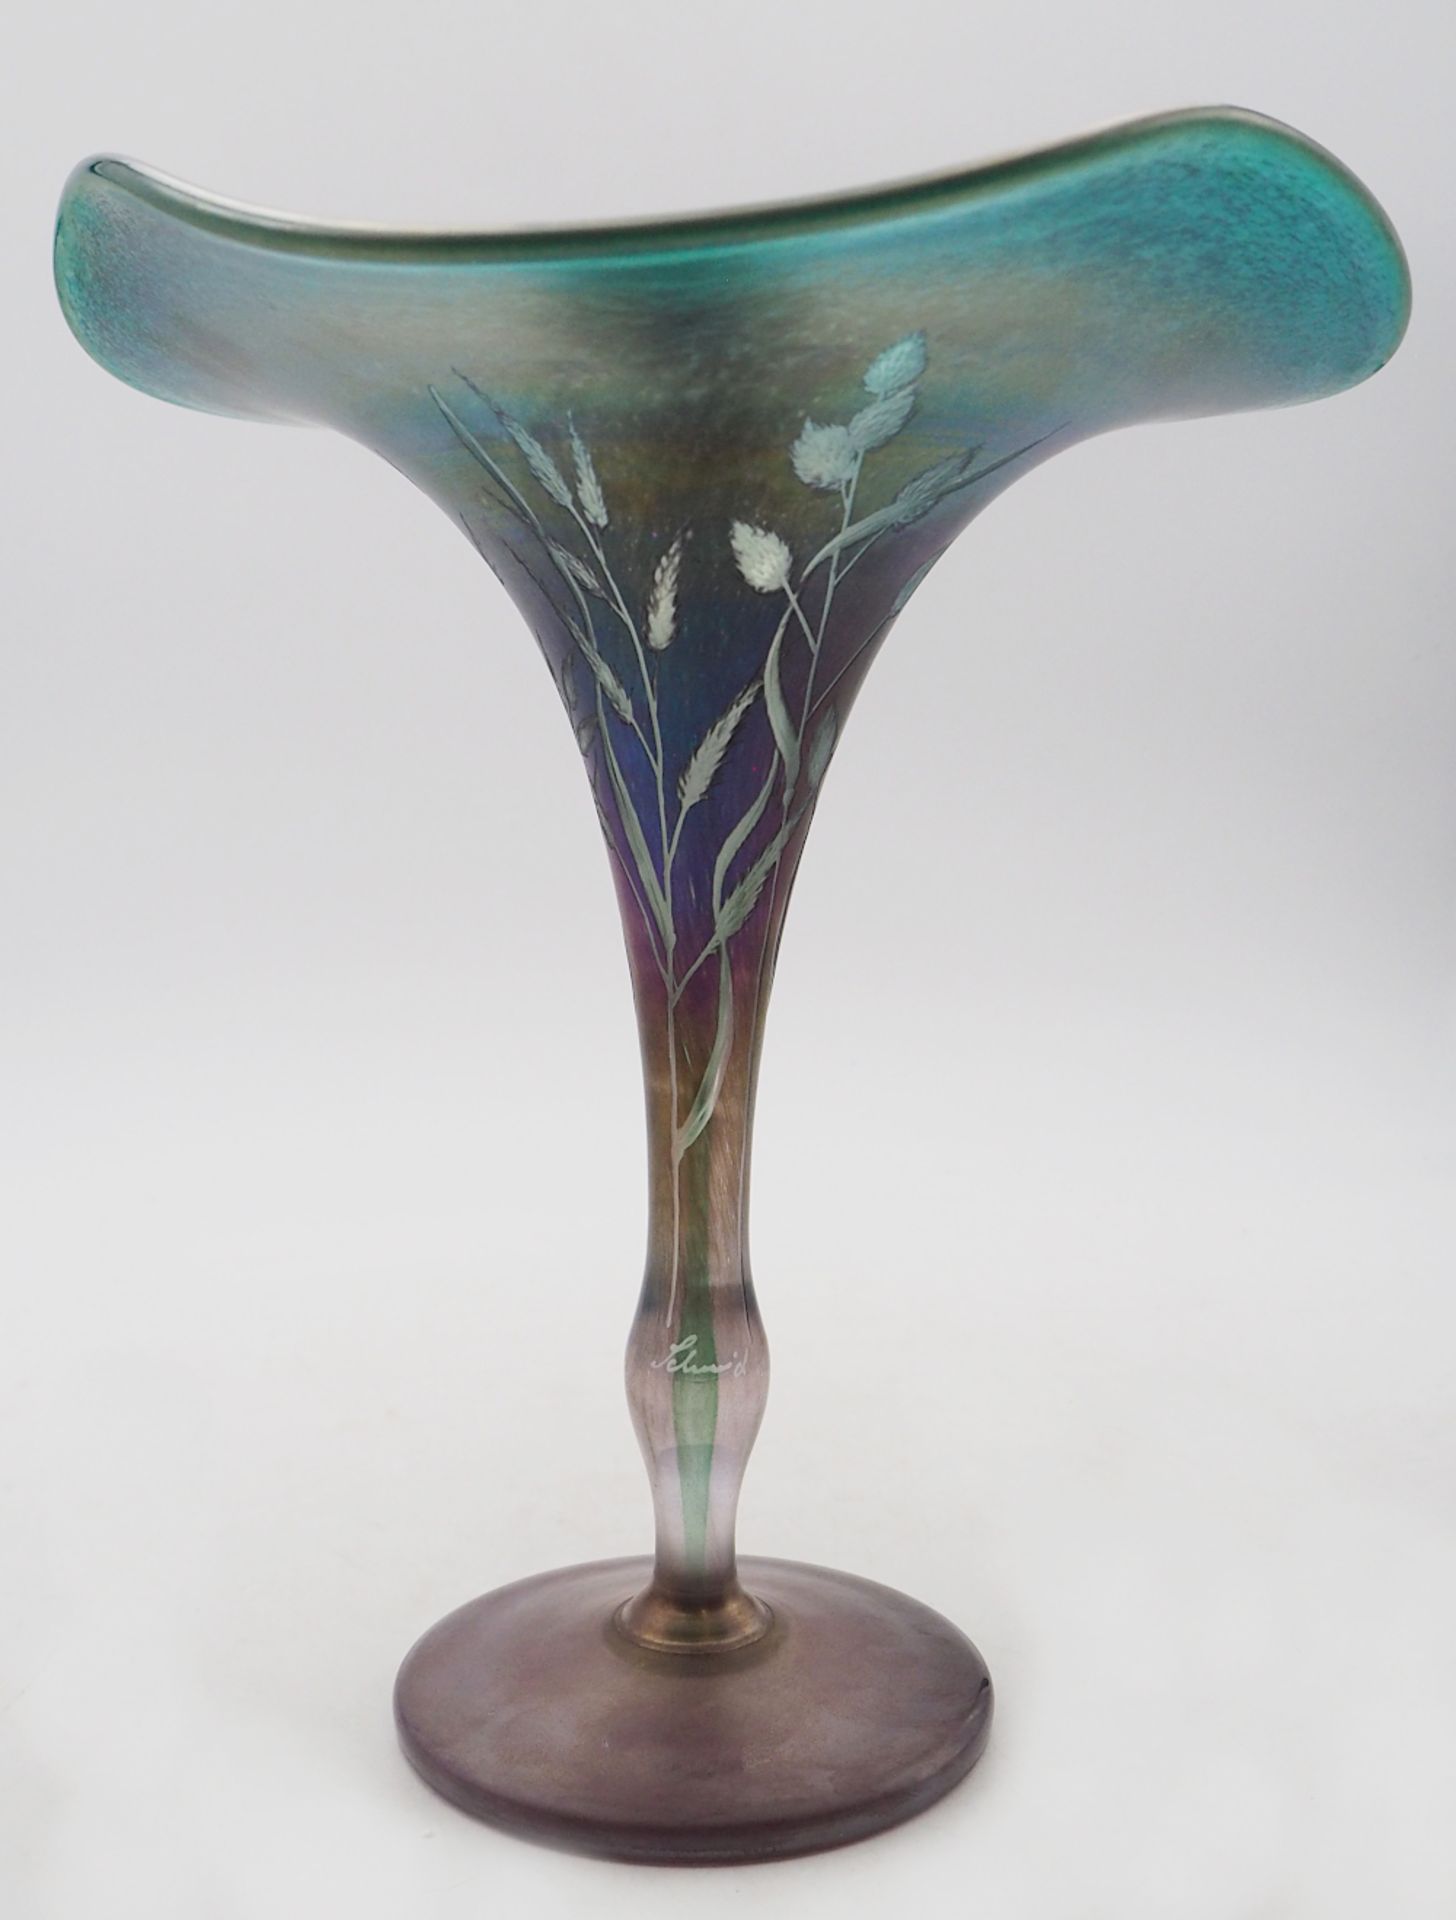 1 Vase signiert Erwin EISCH, Bayerischer Wald Zylinderform, farbloses Glas leicht iris - Bild 6 aus 7